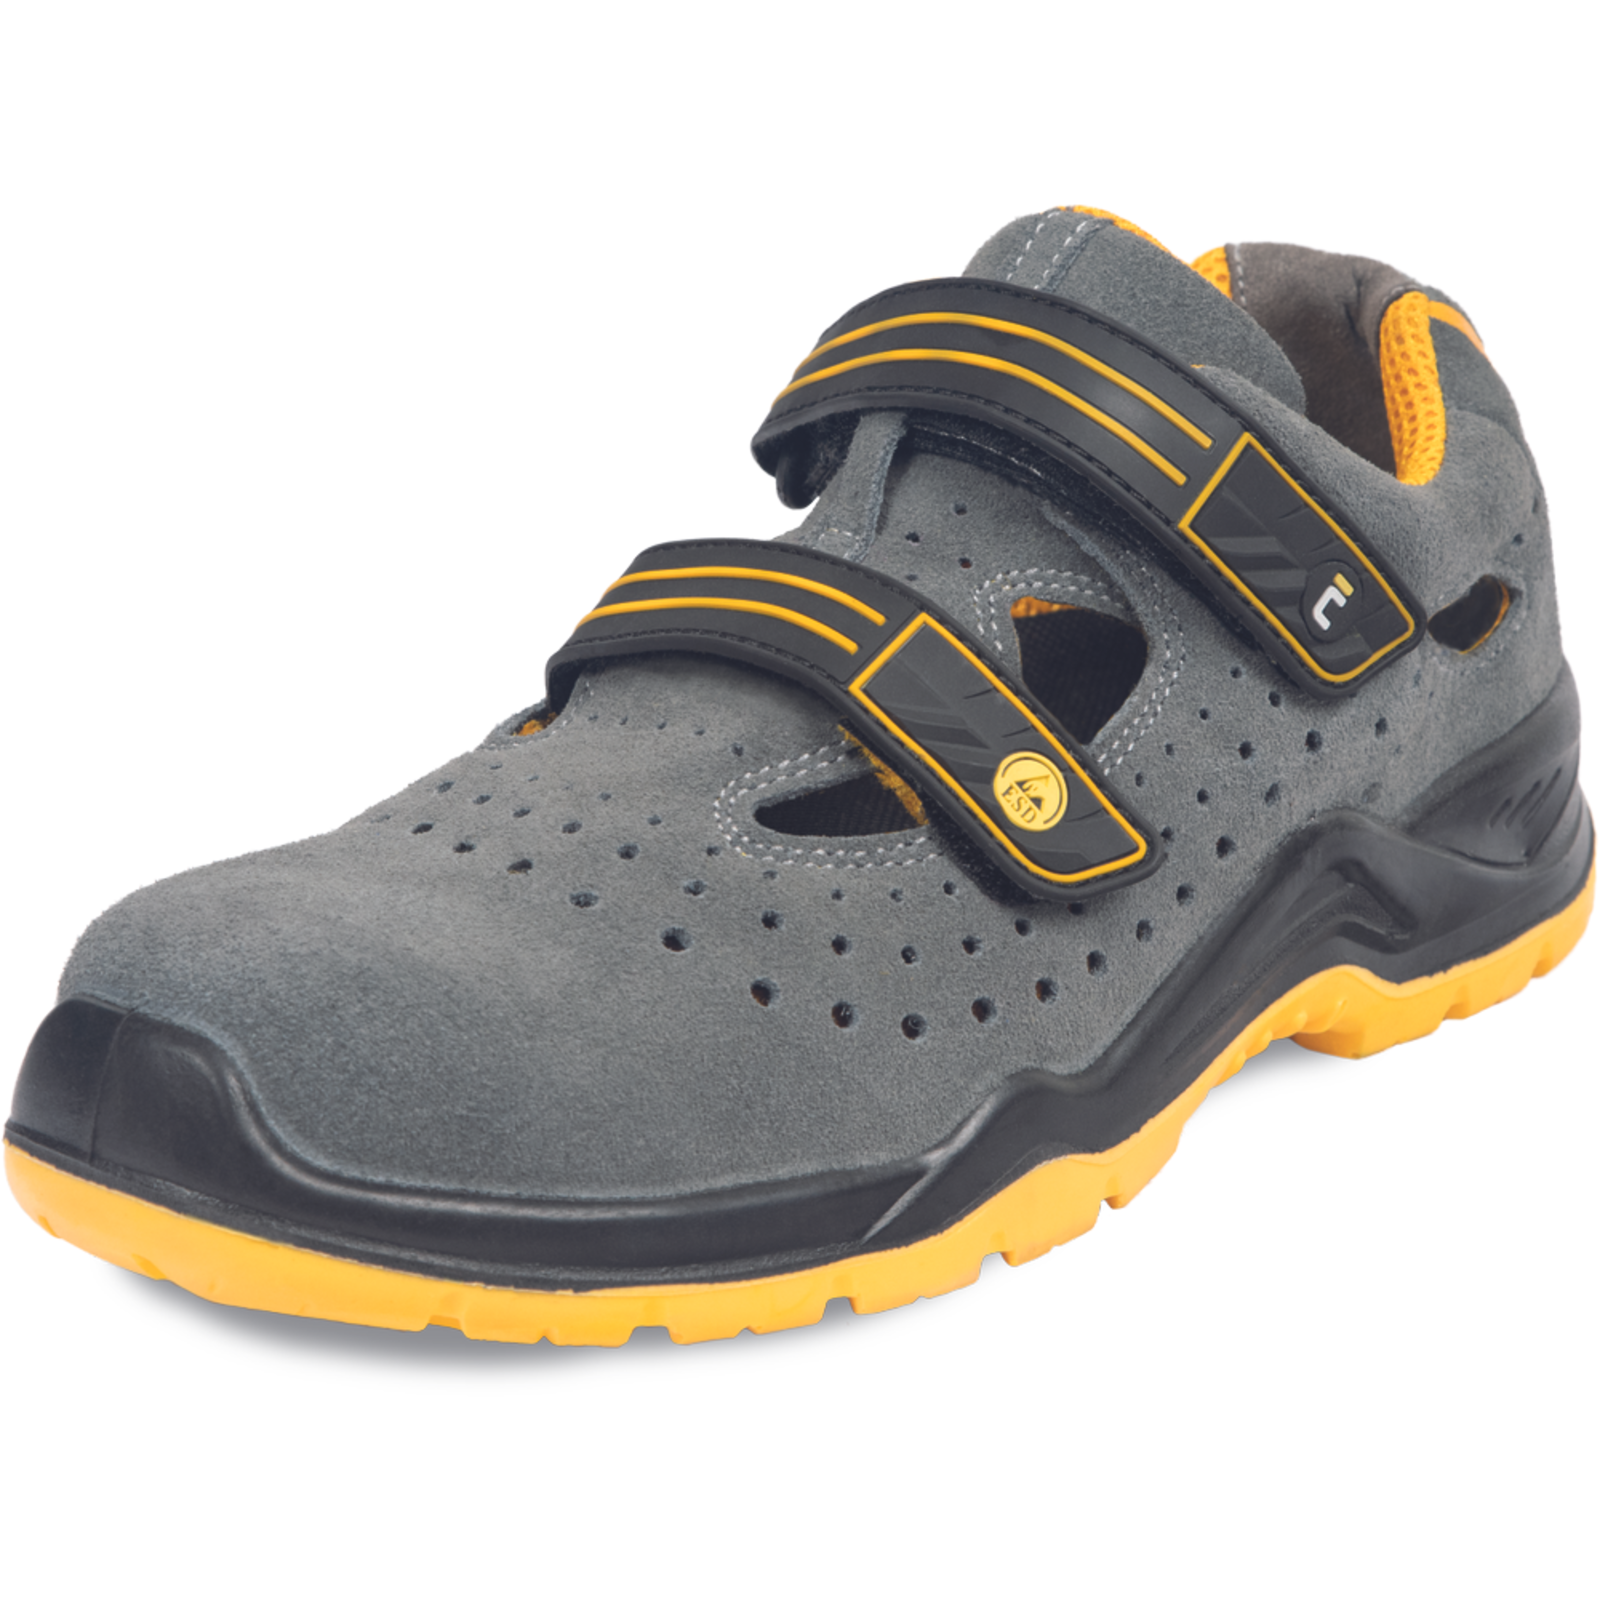 Pracovné bezpečnostné sandále Cerva Yuwill MF ESD S1P SRC - veľkosť: 43, farba: sivá/žltá